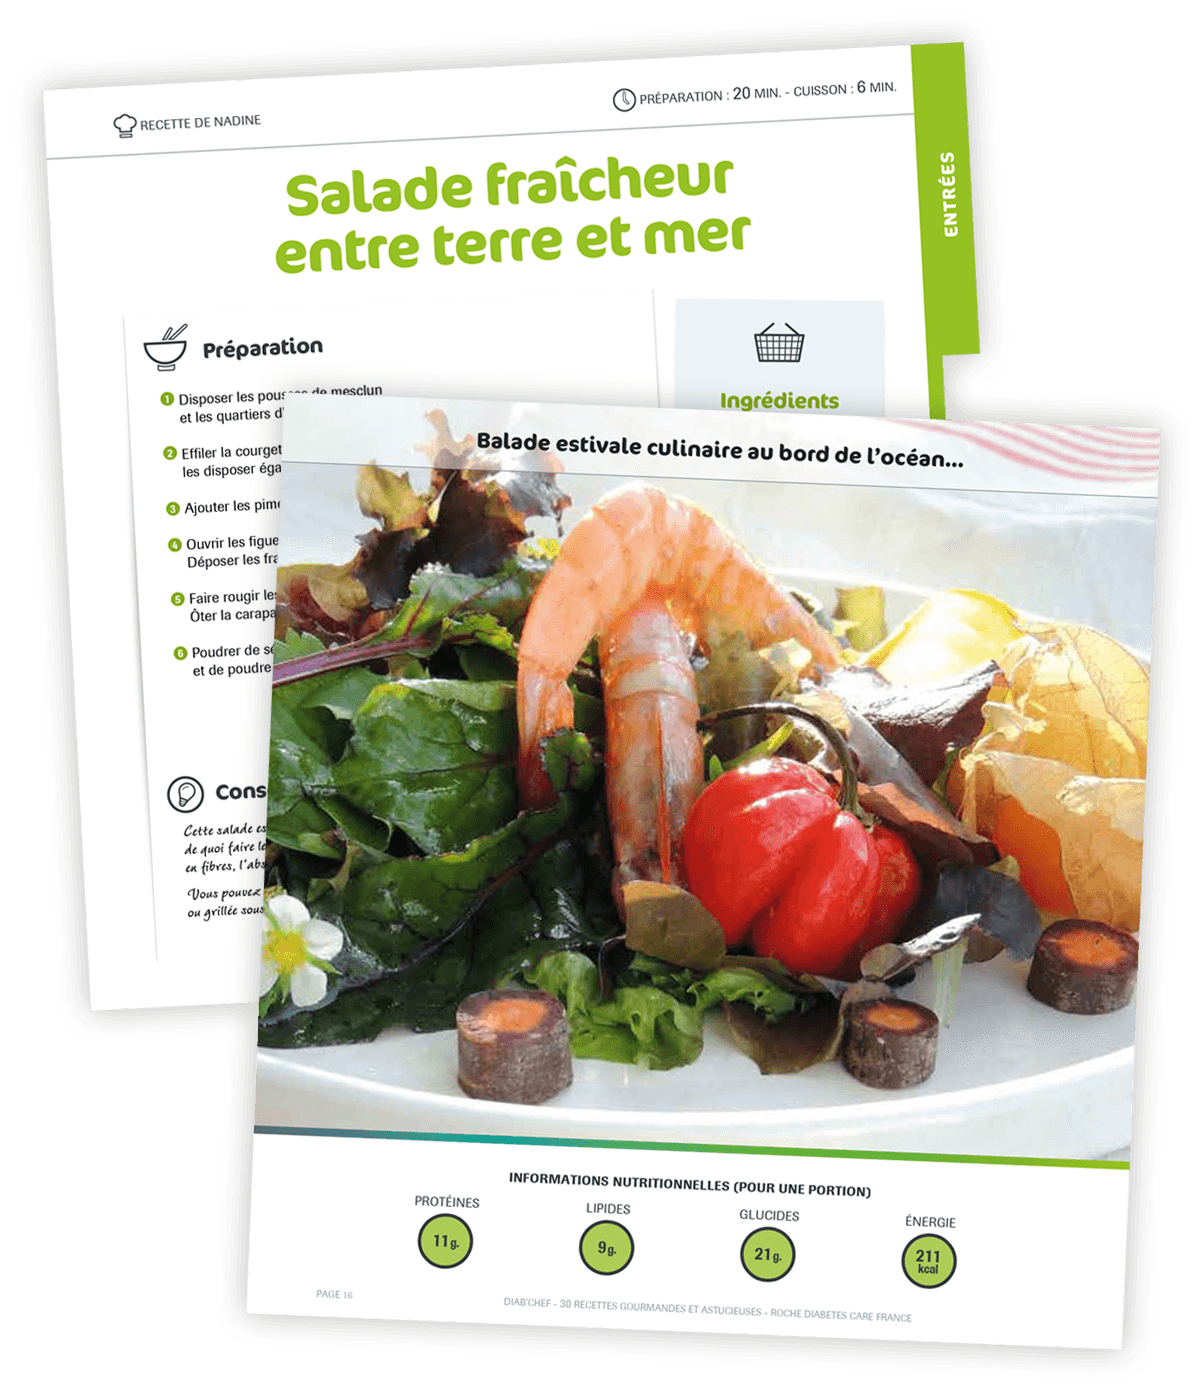 Livre de cuisine gourmande créé pour Roche Diabetes Care par Caramel & Paprika - Pages recette 16 et 17 (photo © Nadine, participante du concours Diab'Chef)